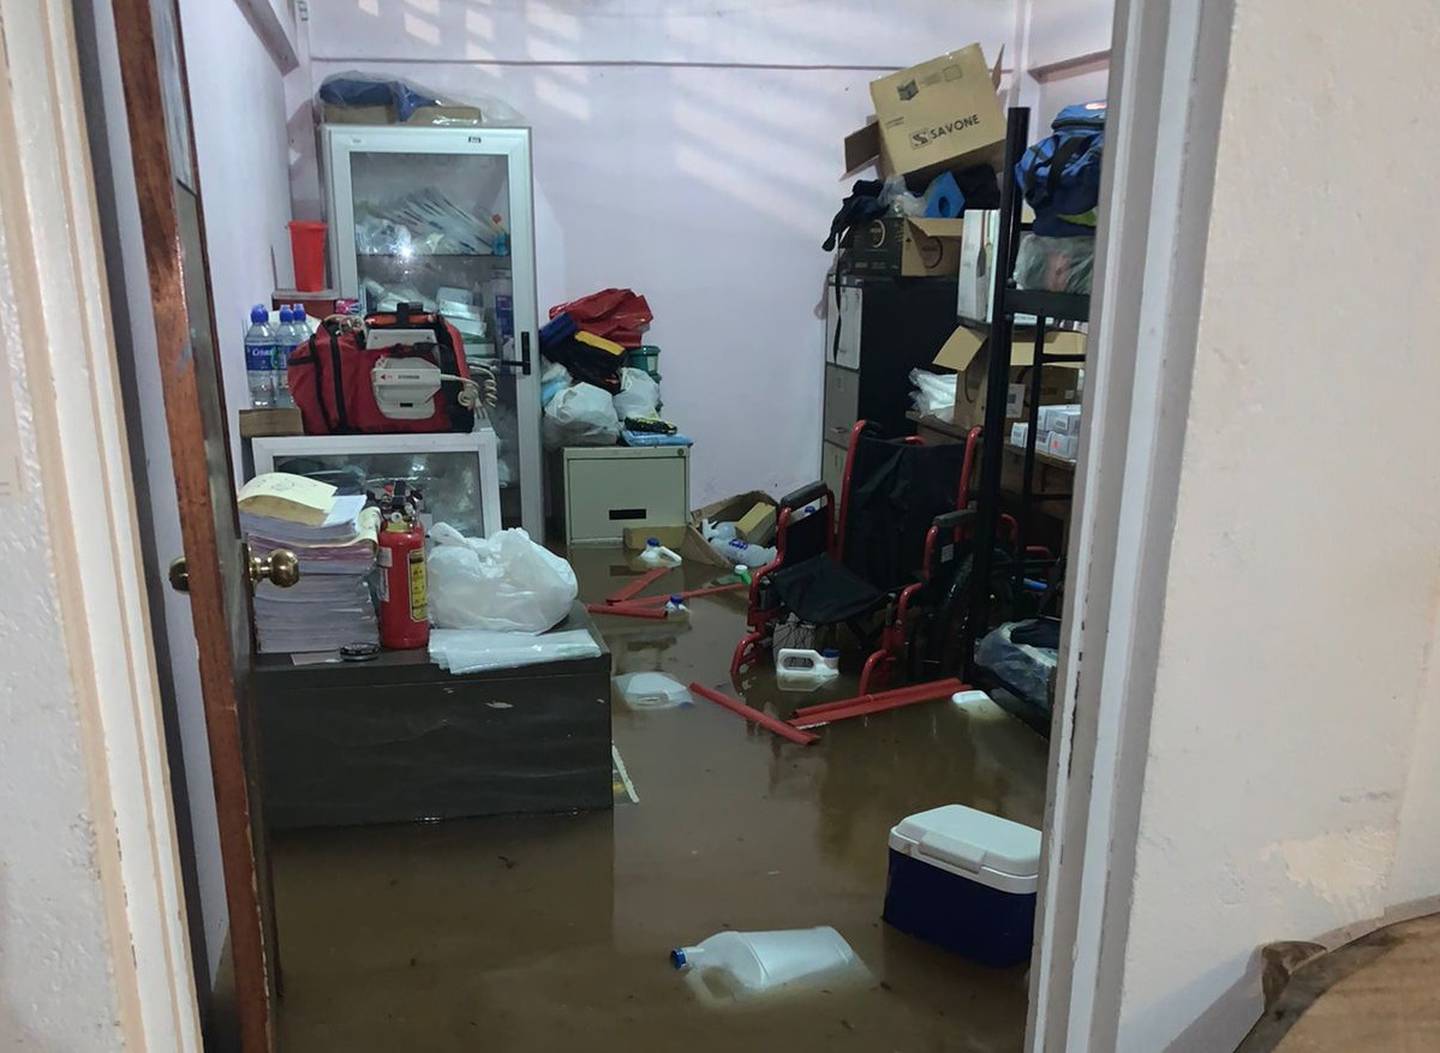 Lluvias causaron inundación en la Cruz Roja de Jacó. Foto cortesía.